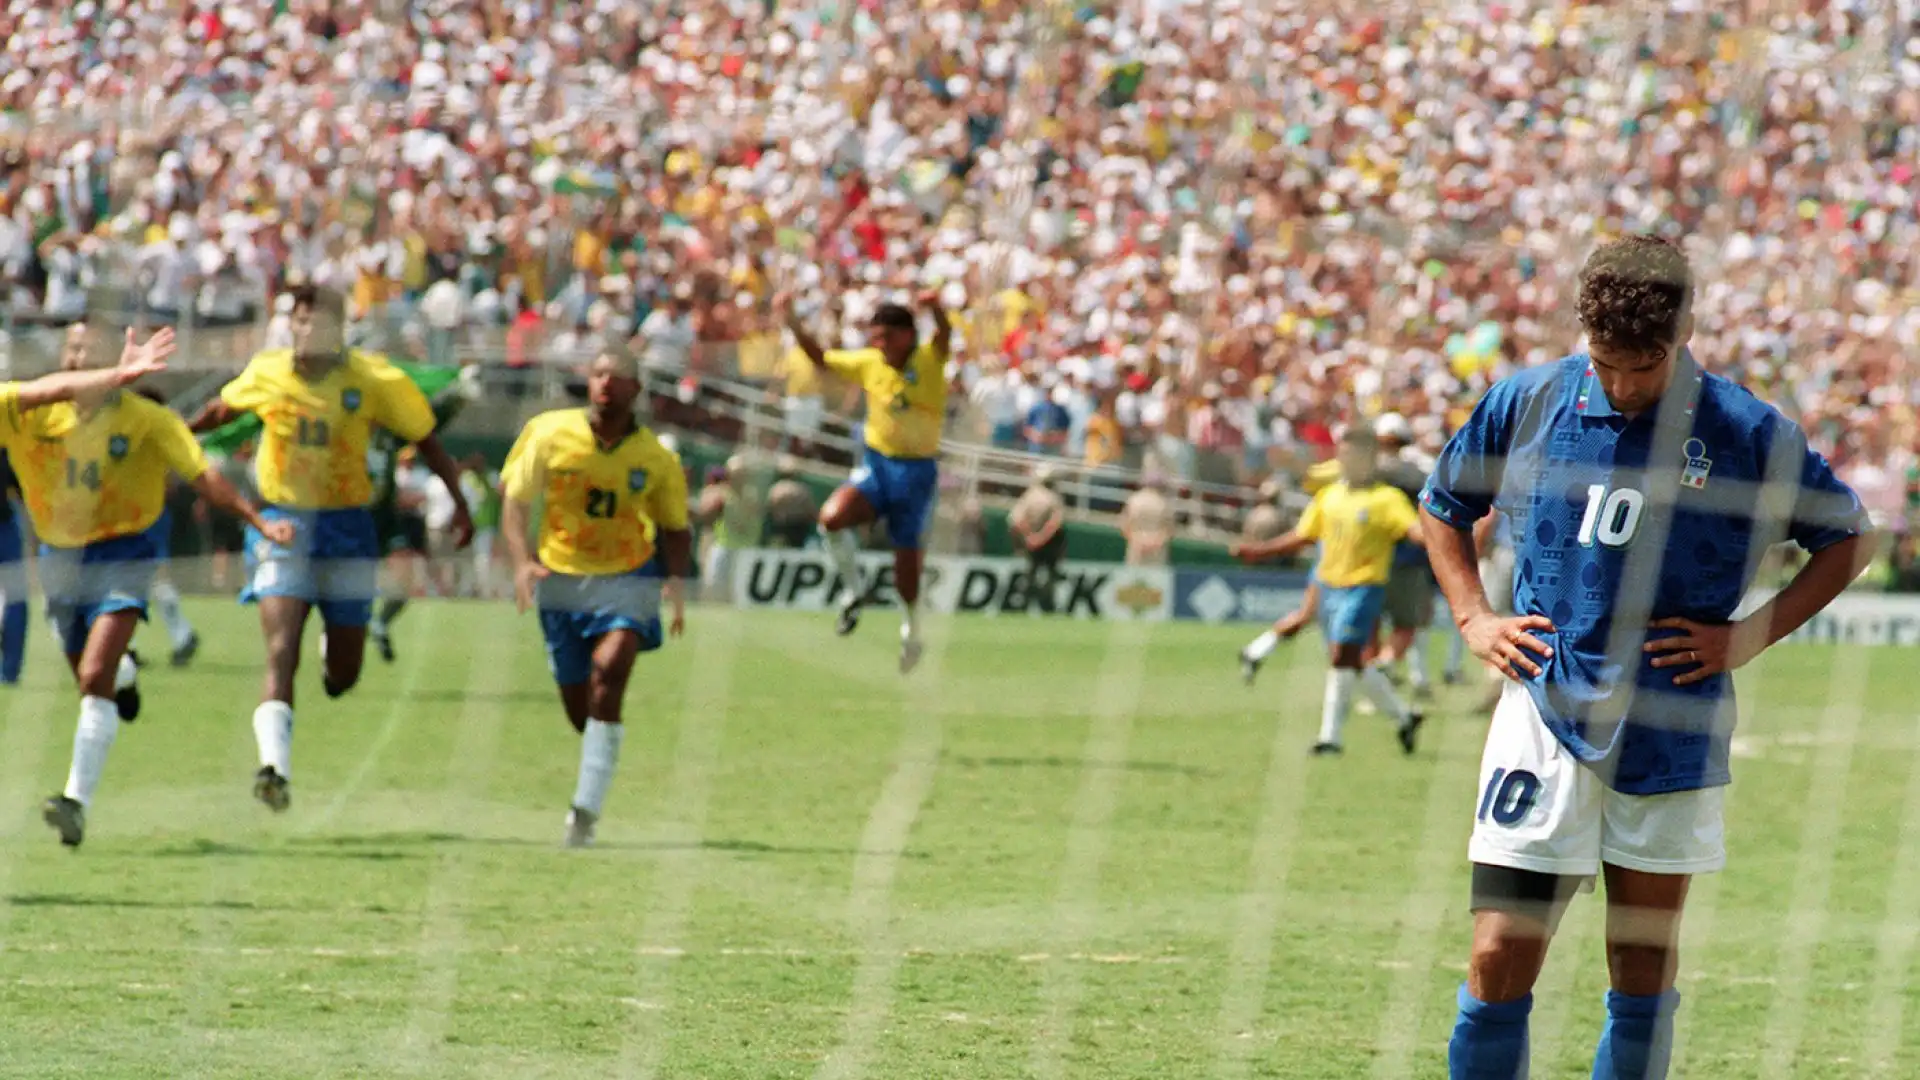 L'amarezza di Roberto Baggio dopo il rigore sbagliato a USA '94 che consegna la Coppa del Mondo al Brasile